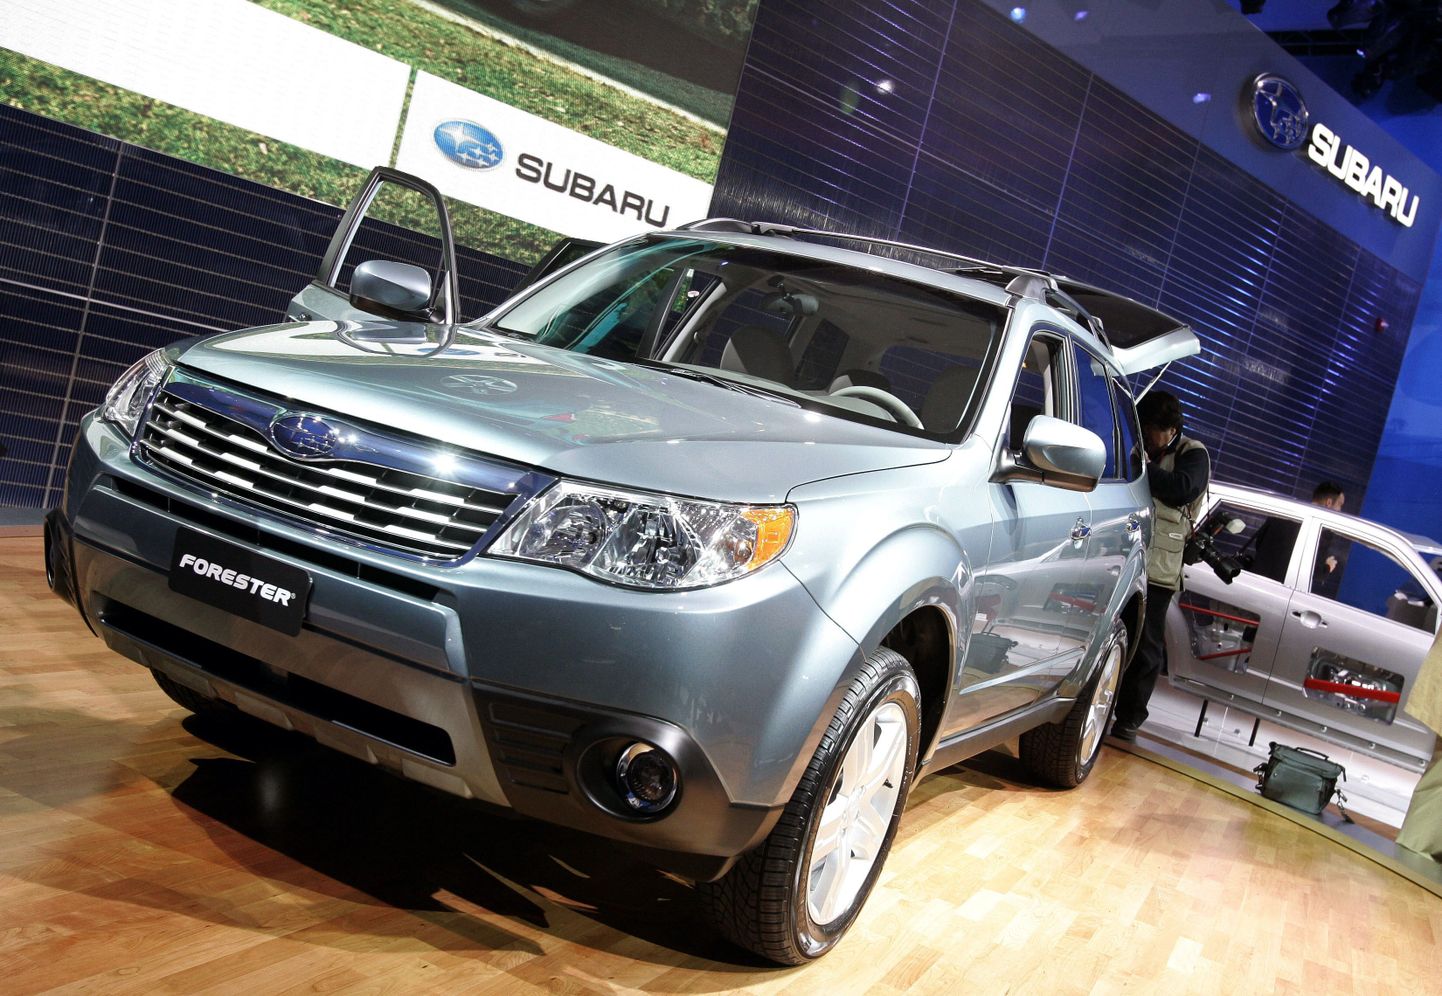 Subaru müüginumbrid kasvasid masu kiuste nii USAs kui Euroopas. Pildil Subaru Forester.